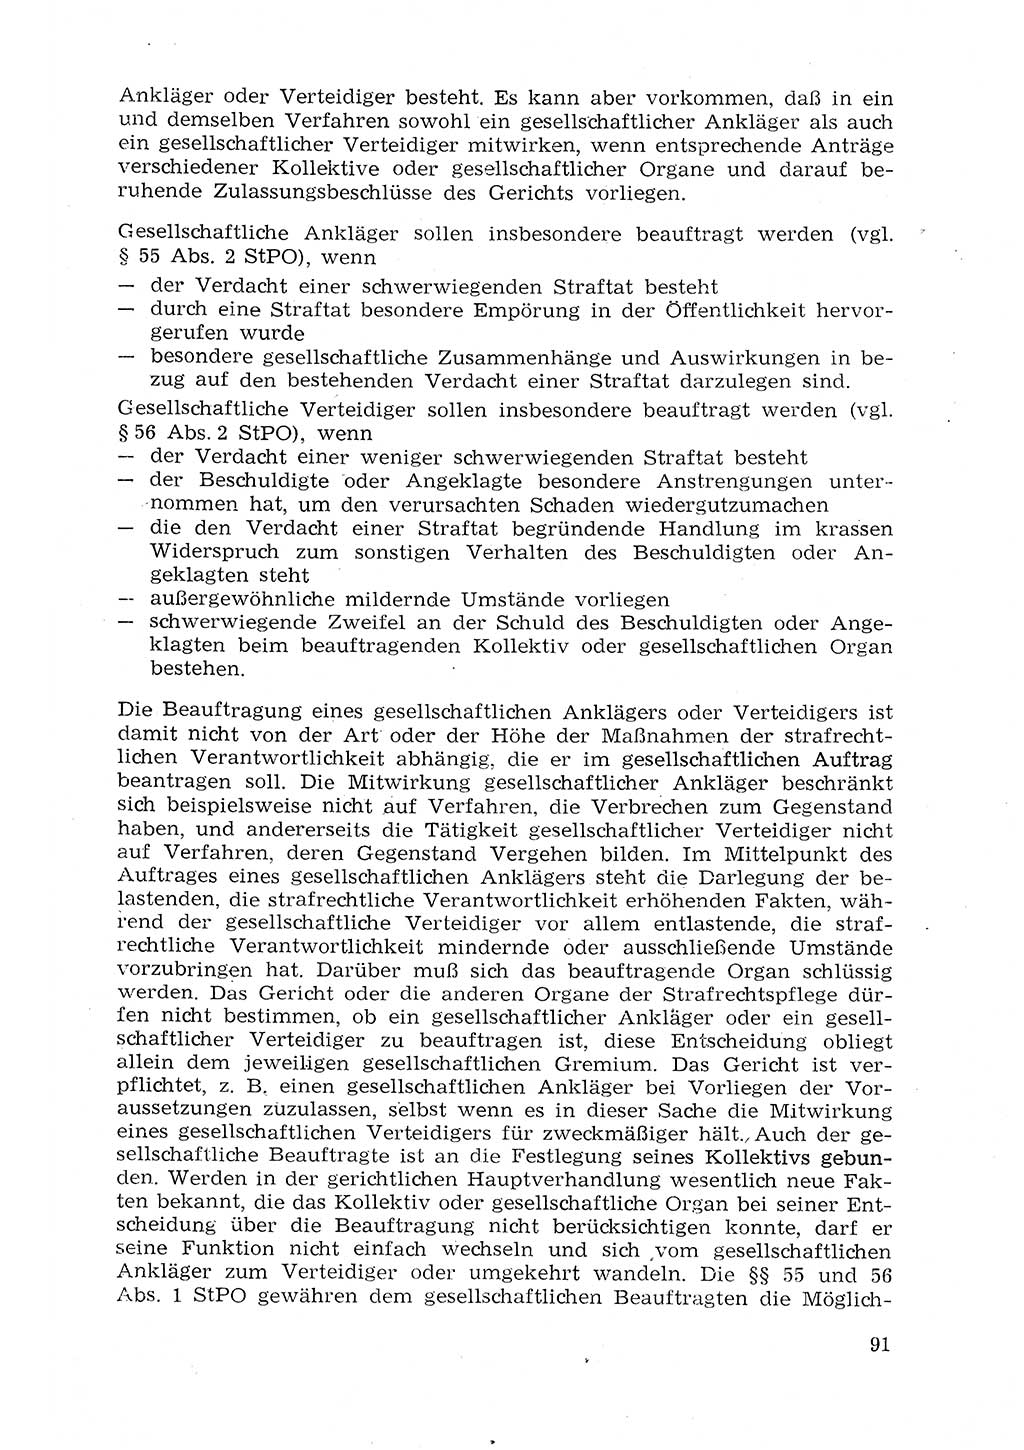 Strafprozeßrecht der DDR (Deutsche Demokratische Republik), Lehrmaterial 1969, Seite 91 (Strafprozeßr. DDR Lehrmat. 1969, S. 91)